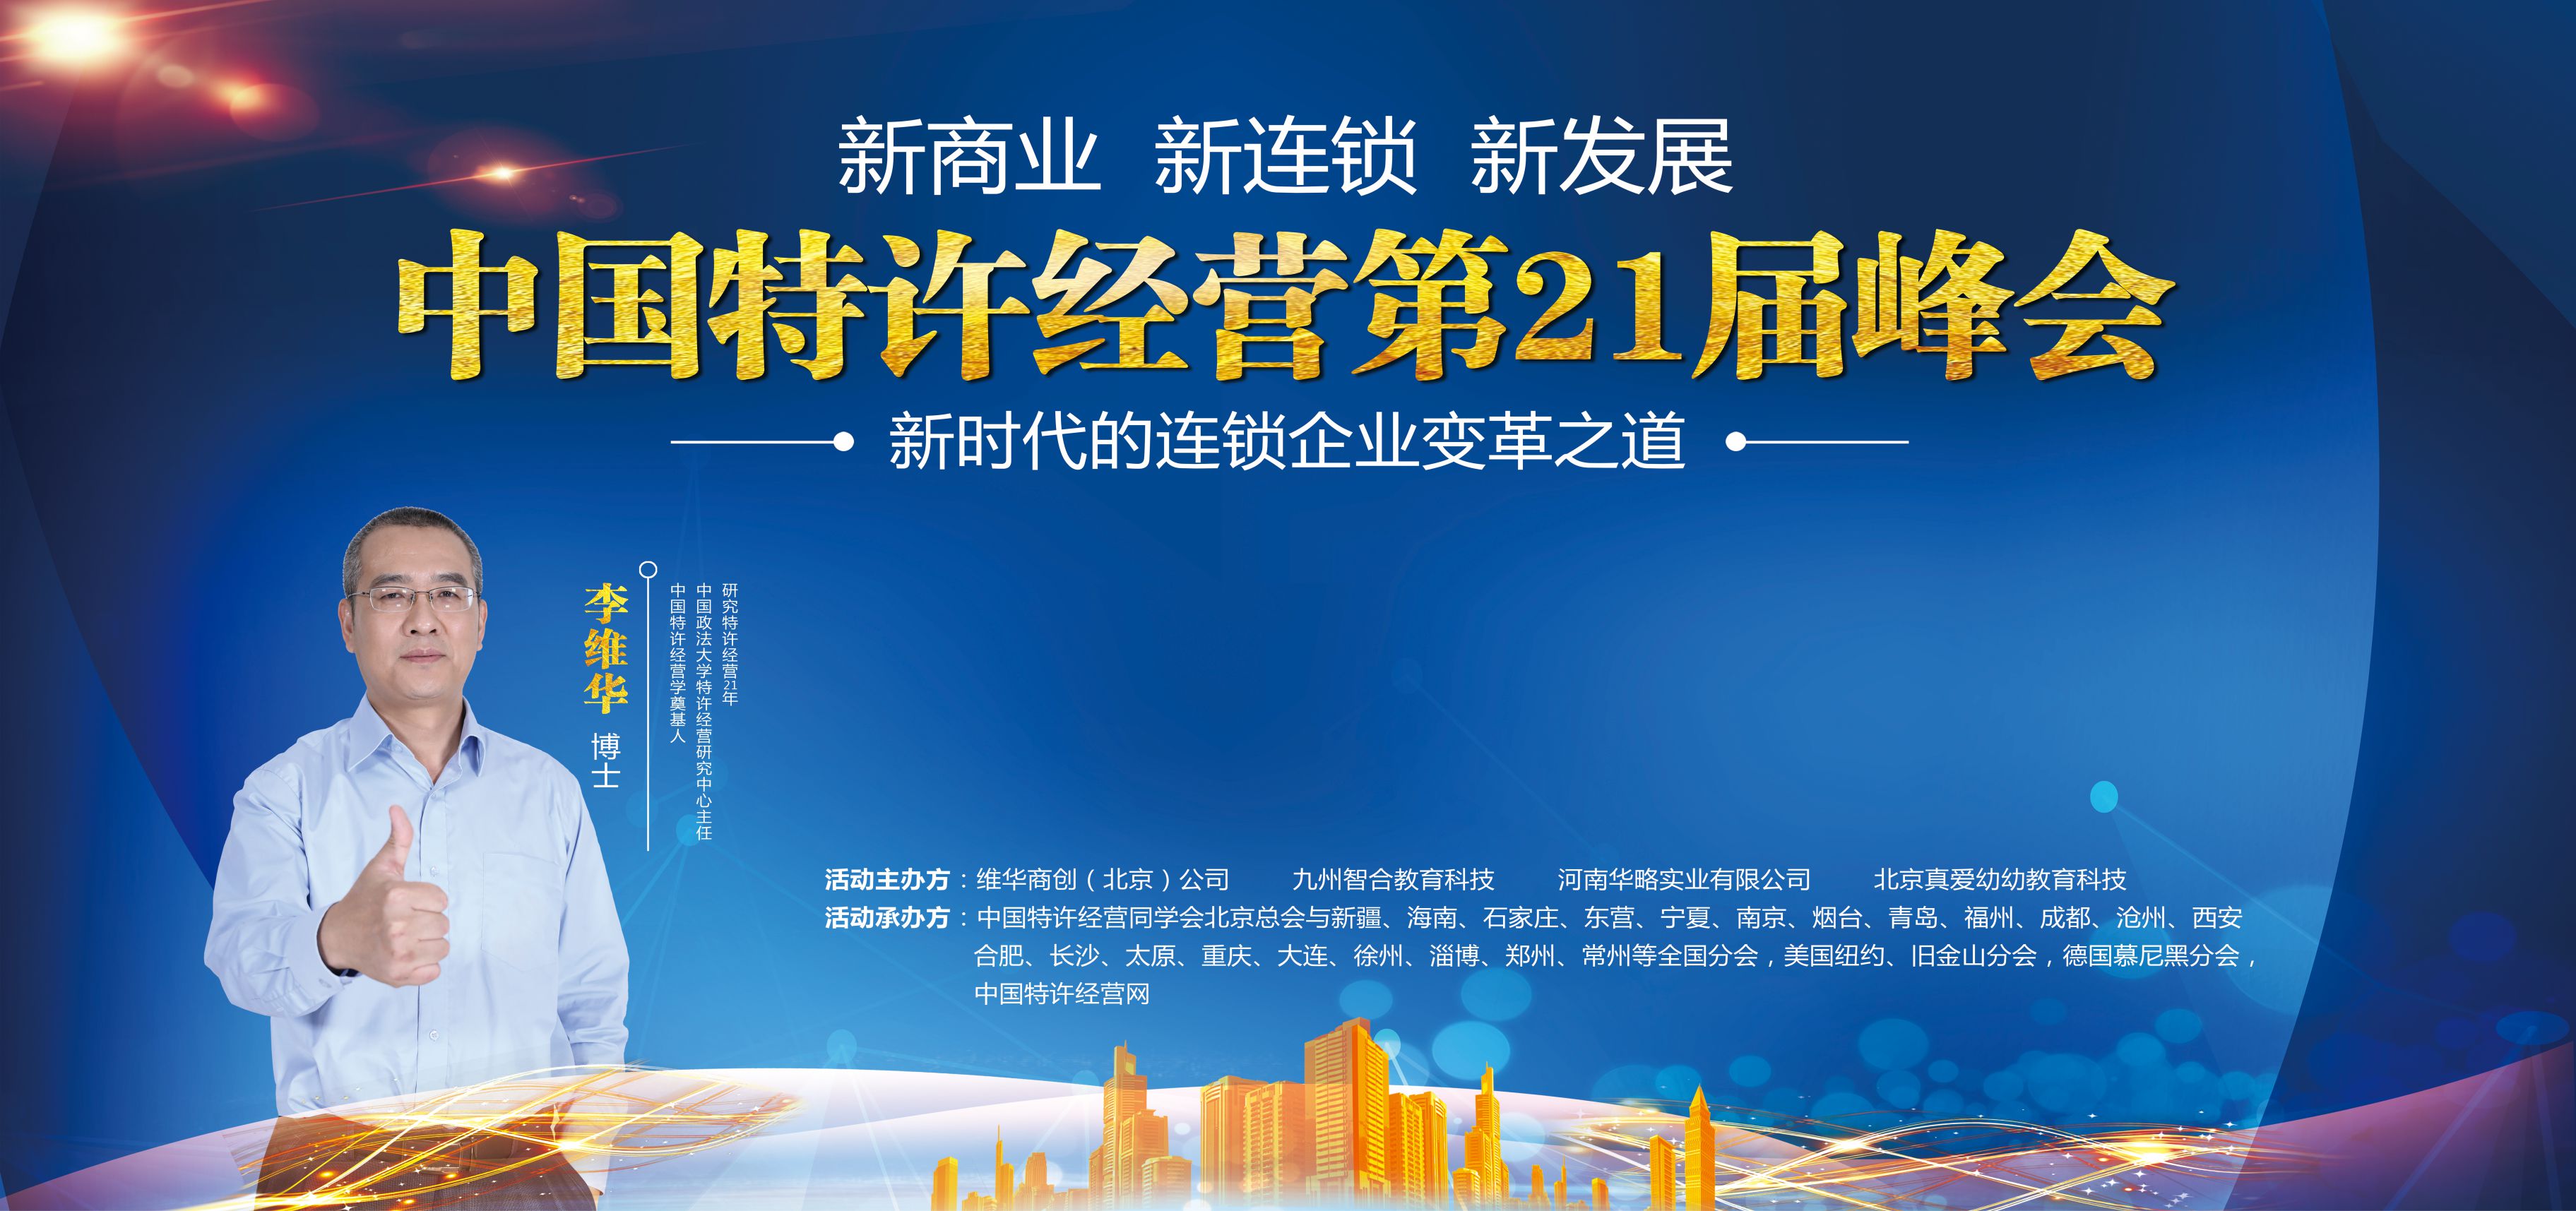 中国特许经营第21届峰会在郑州圆满闭幕